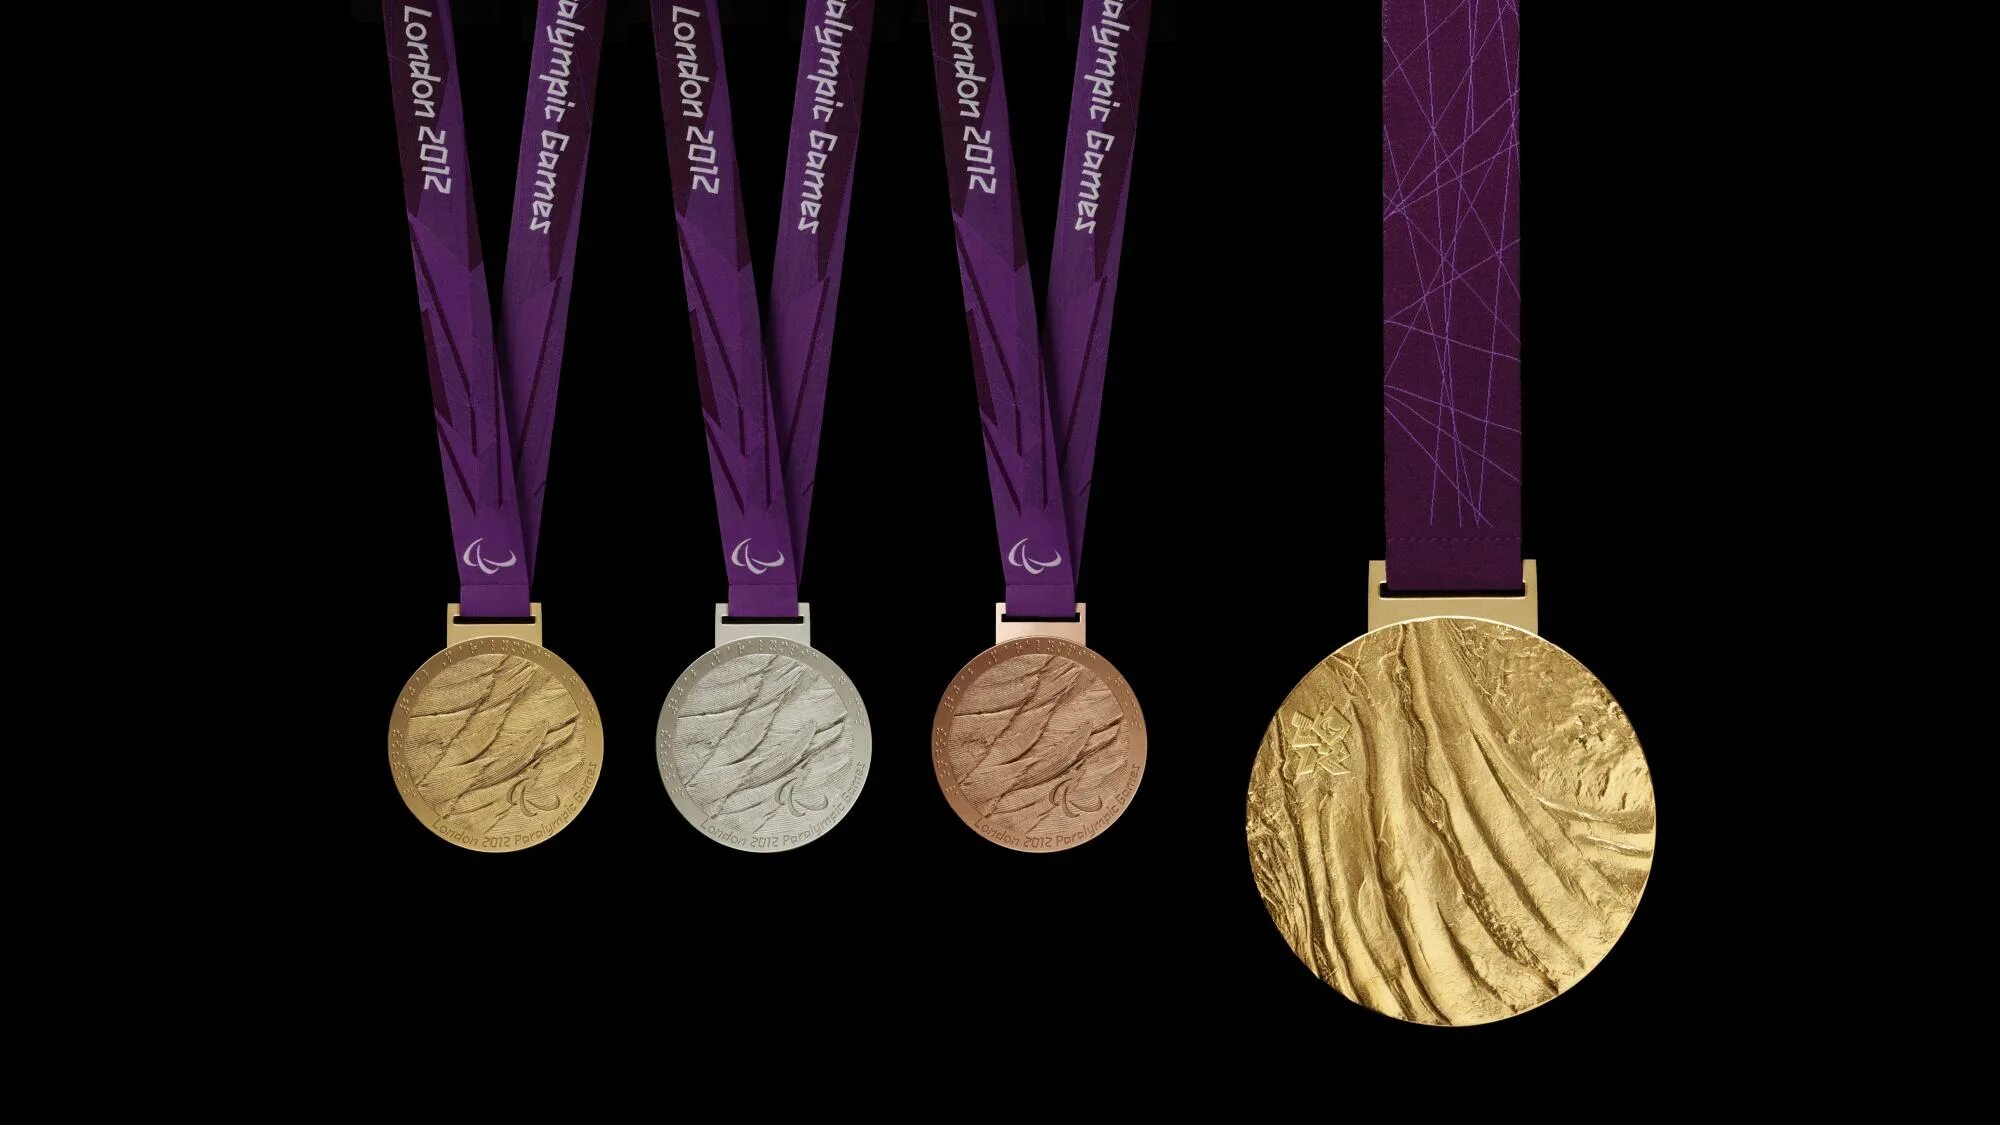 Лондон Паралимпийские игры медали 2012. Олимпийская медаль Лондон 2012. Золотая медаль Паралимпийских игр. Медали олимпиады 2012 Лондон. Medal rise